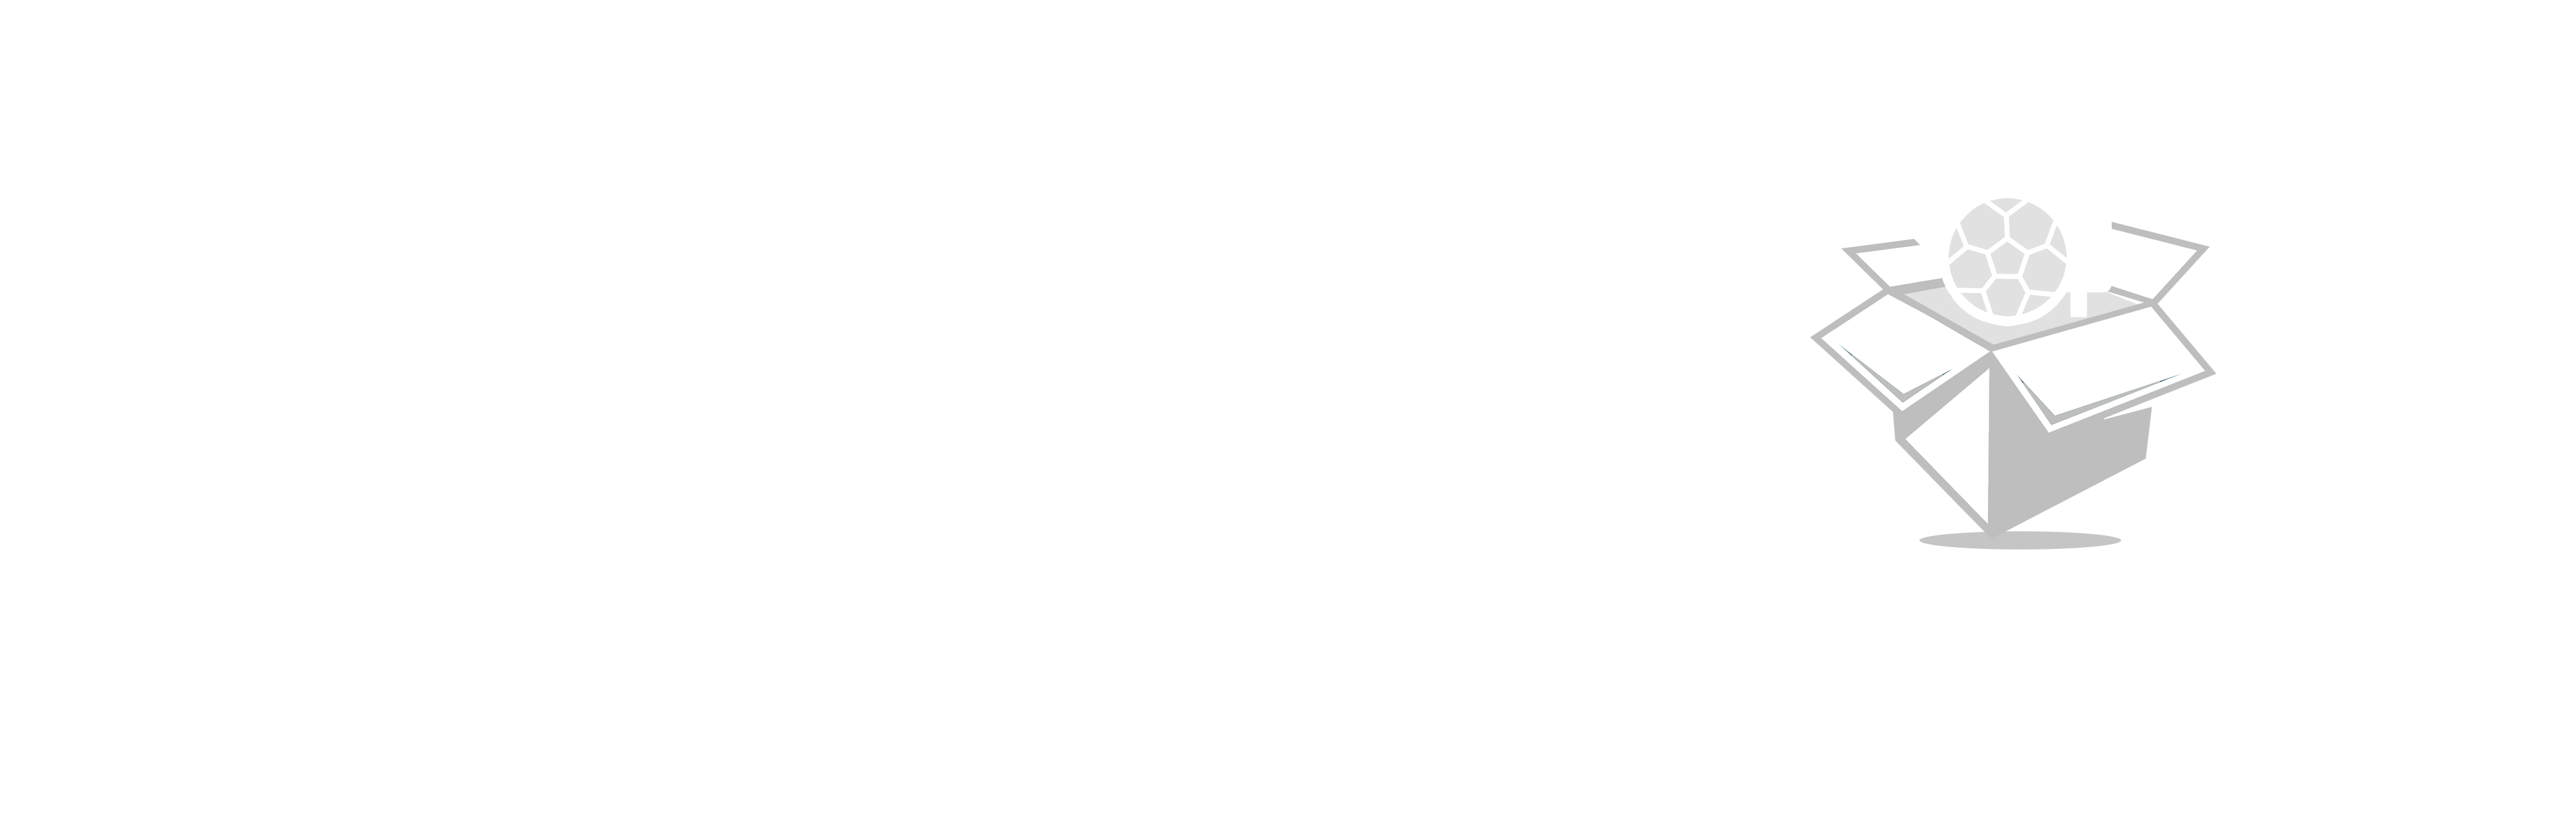 Fantasy Cricket App Development Company | Fantasy Cricket App Developers